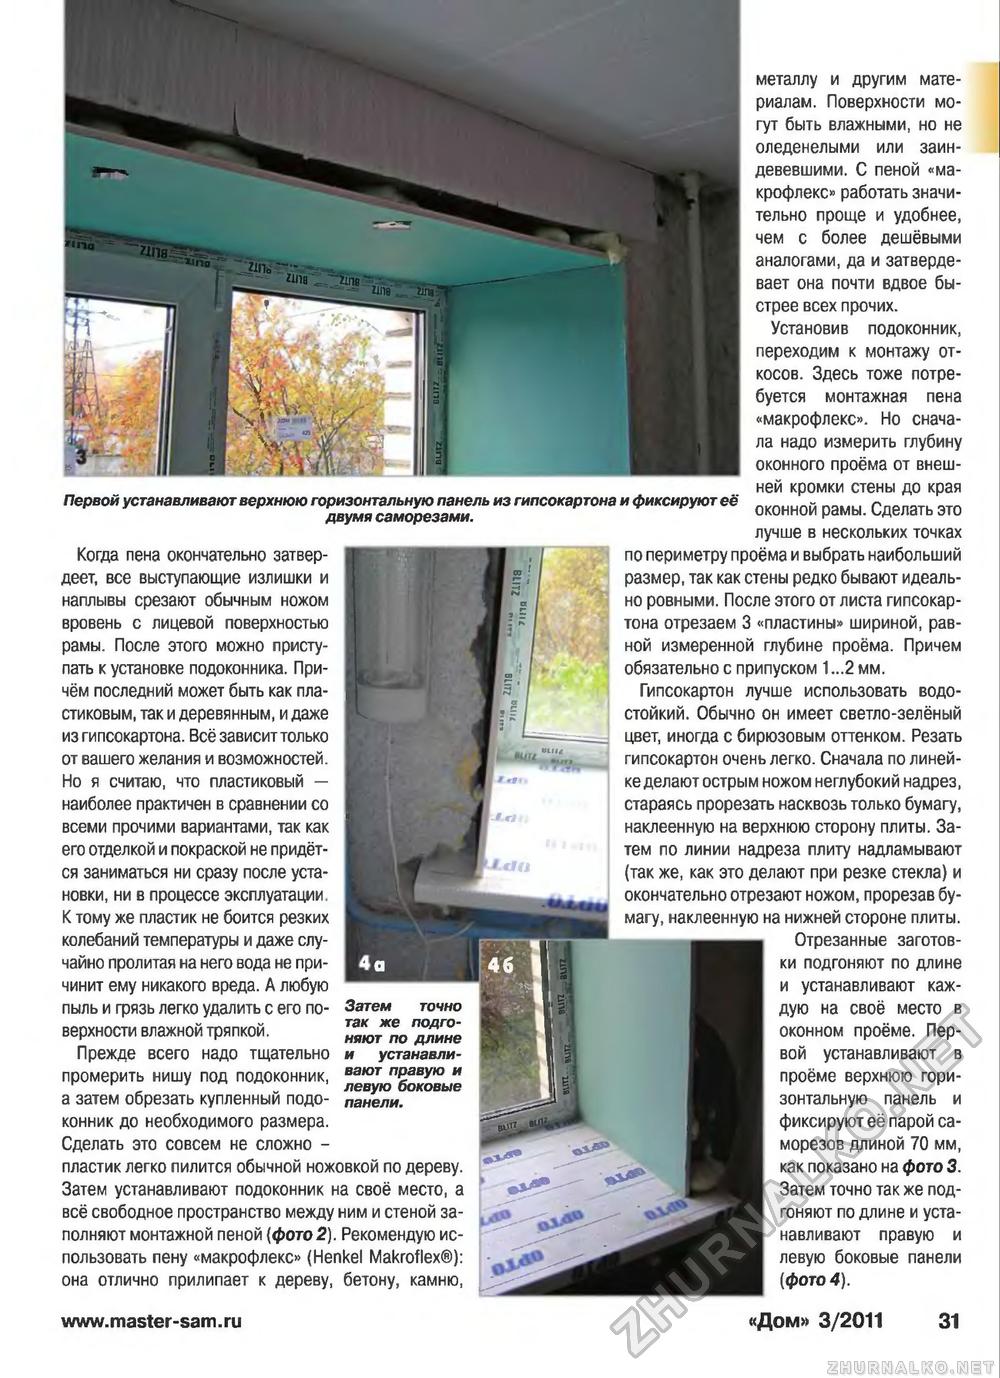 Дом 2011-03, страница 31